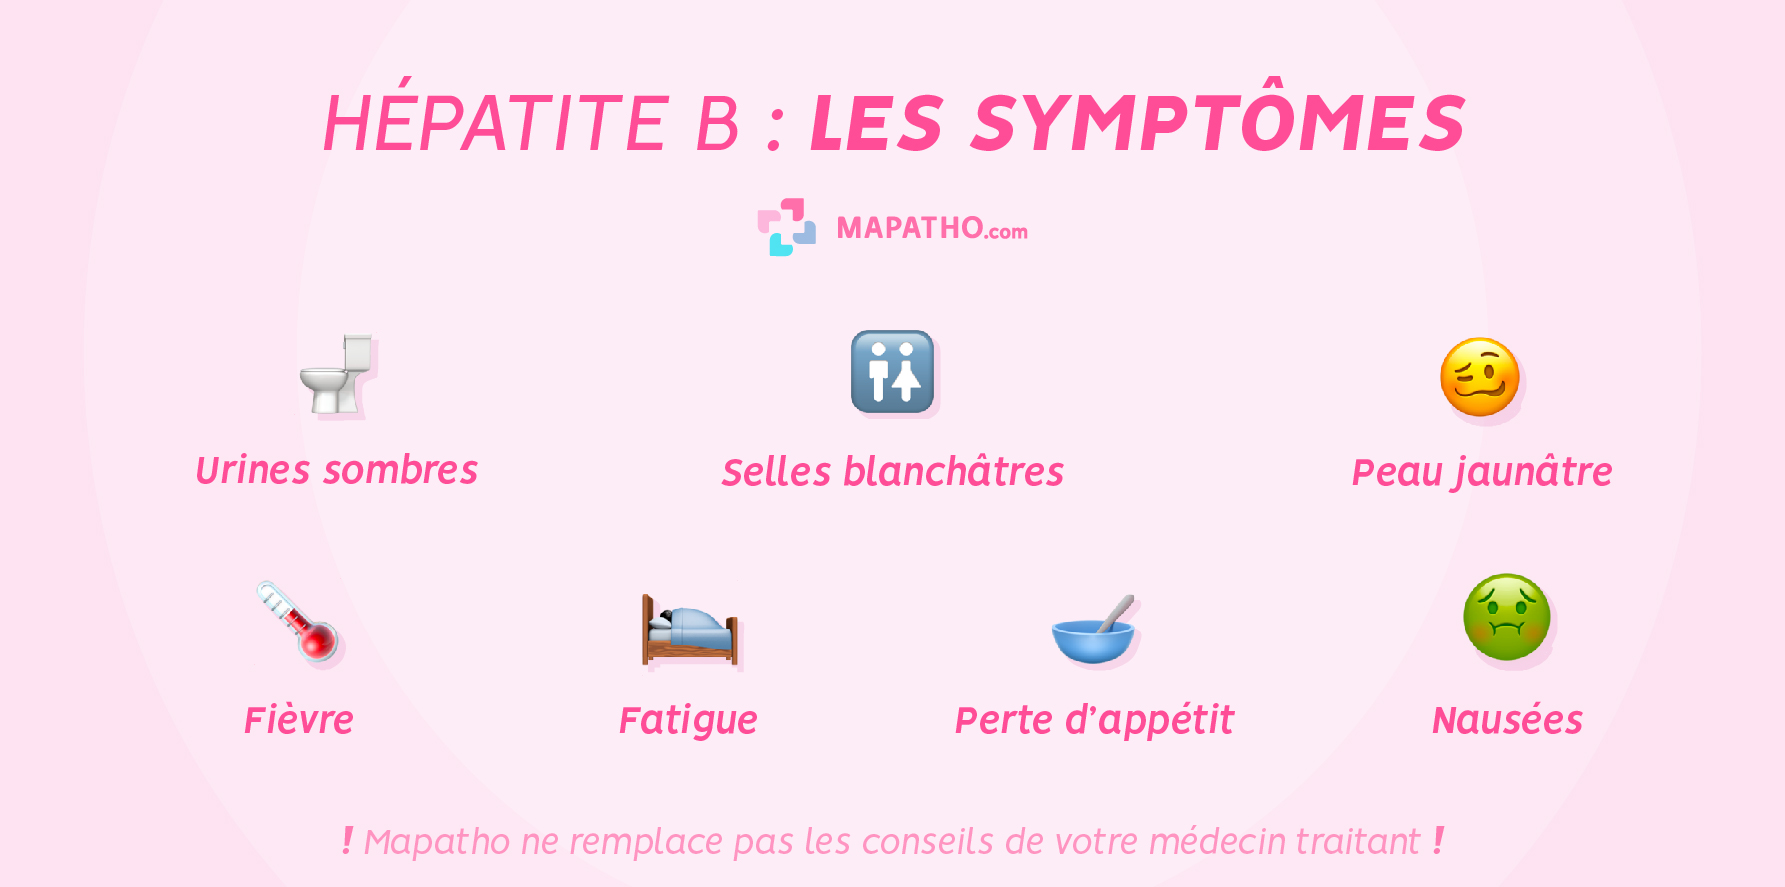 Les symptômes de l'hépatite B